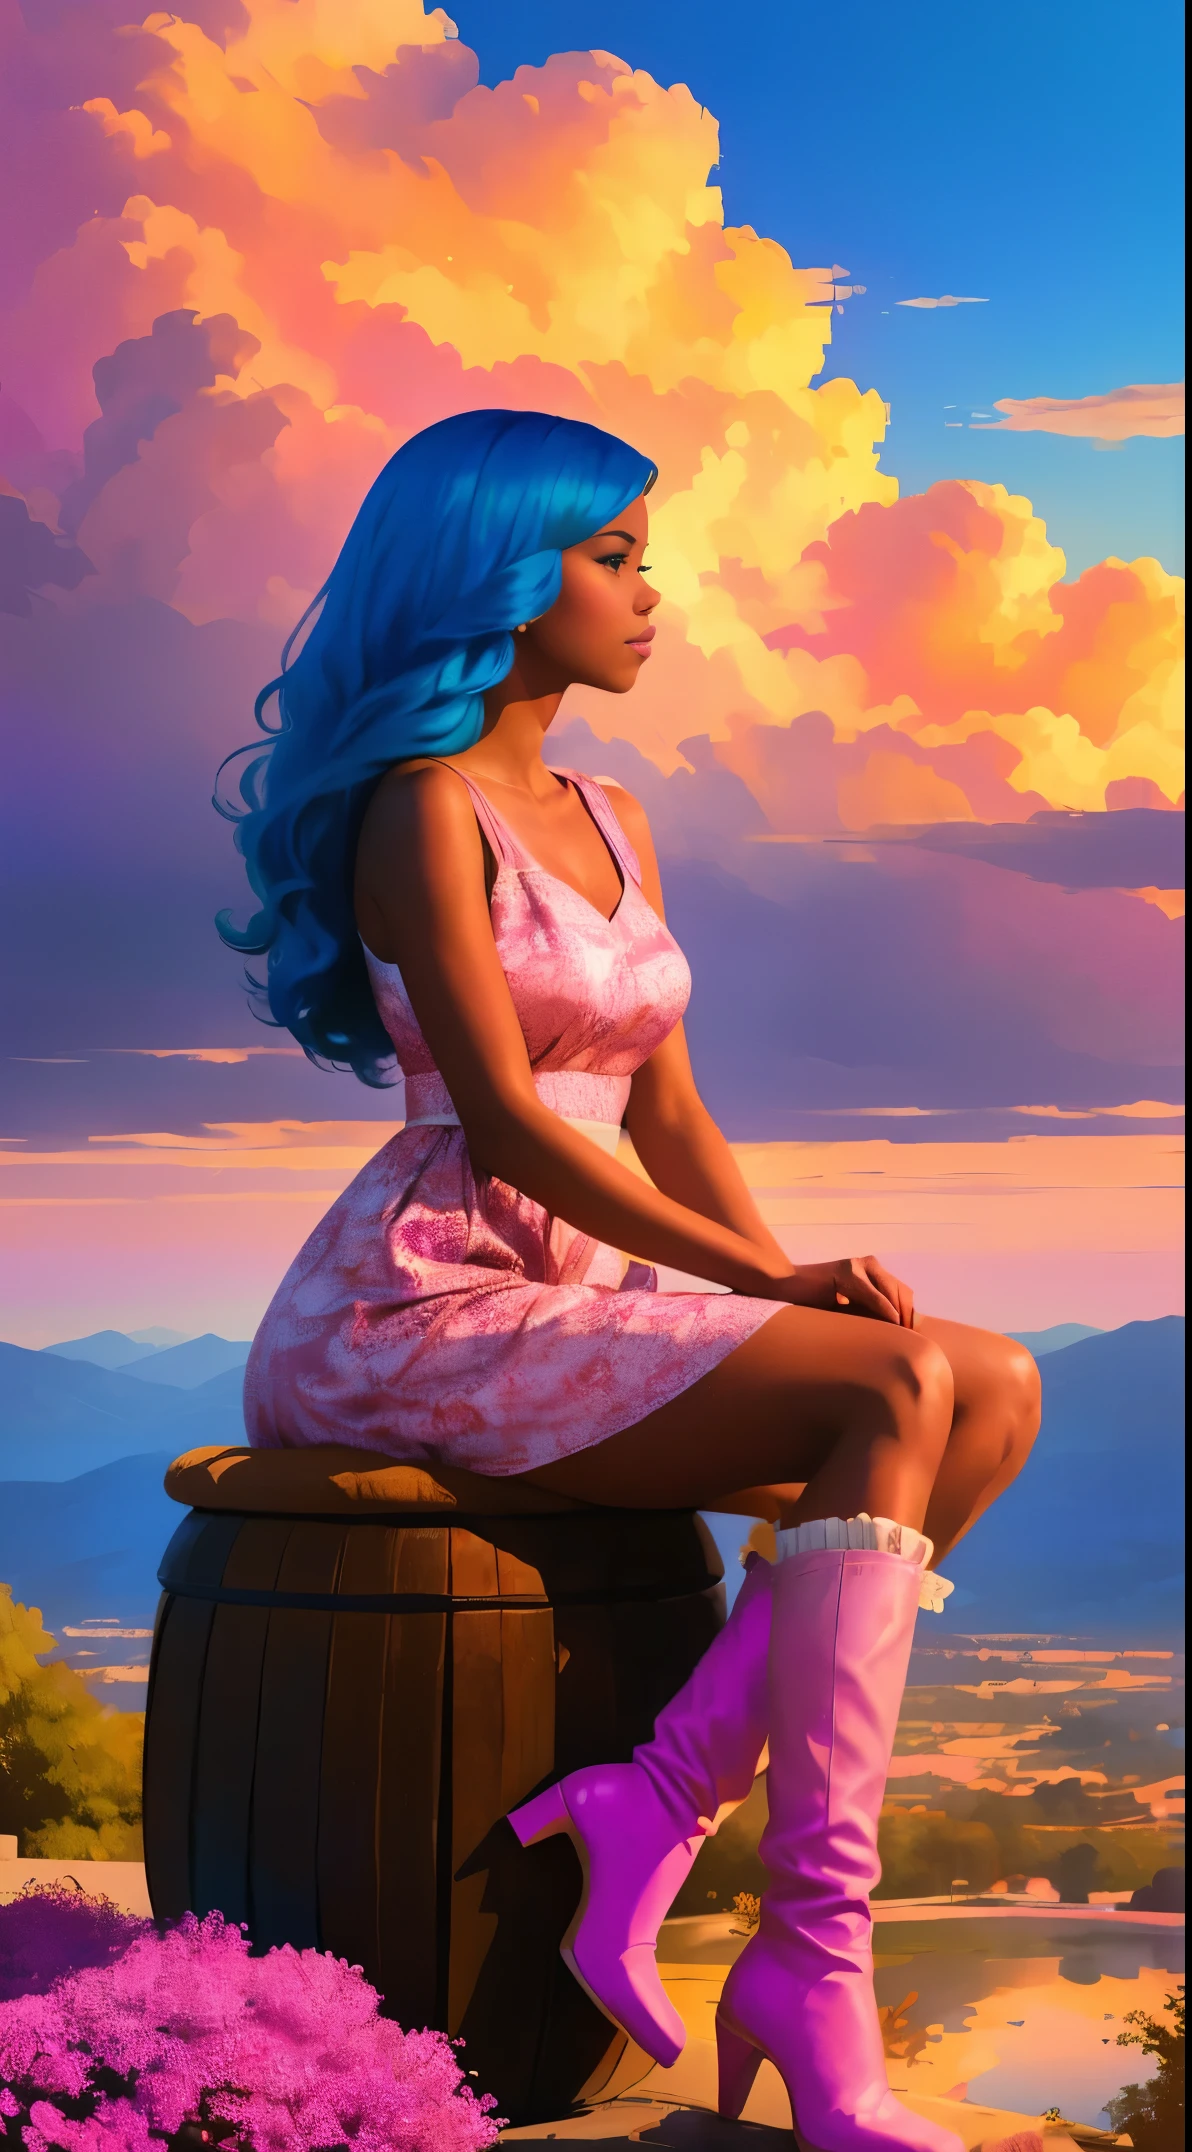 (最好的质量:1.1),原来的,1女孩,别致,趋势,非洲式,暗黑皮肤,化妆品,1970 年代, 蓝头发, 棕色的眼睛,  一幅幻想中的非洲裔美国女性的插图，她有着自然的头发，站在一朵粉色的云上, 罗斯·陈 (Ross Tran) 的风格, 一件带有可爱云朵图案的粉色连衣裙和一双可爱的粉色靴子, 一位美丽的女人，留着长长的马尾辫，还有刘海, 坐在柔软的粉色云椅上，望着下方远处一座神奇的城市, 日落时分--ar 2:3 -- 6 中.0 粉色和橙色, 杰西卡·德罗辛, 大胆的版画, 迈克尔·马尔姆, 大胆而优雅, 大胆传统